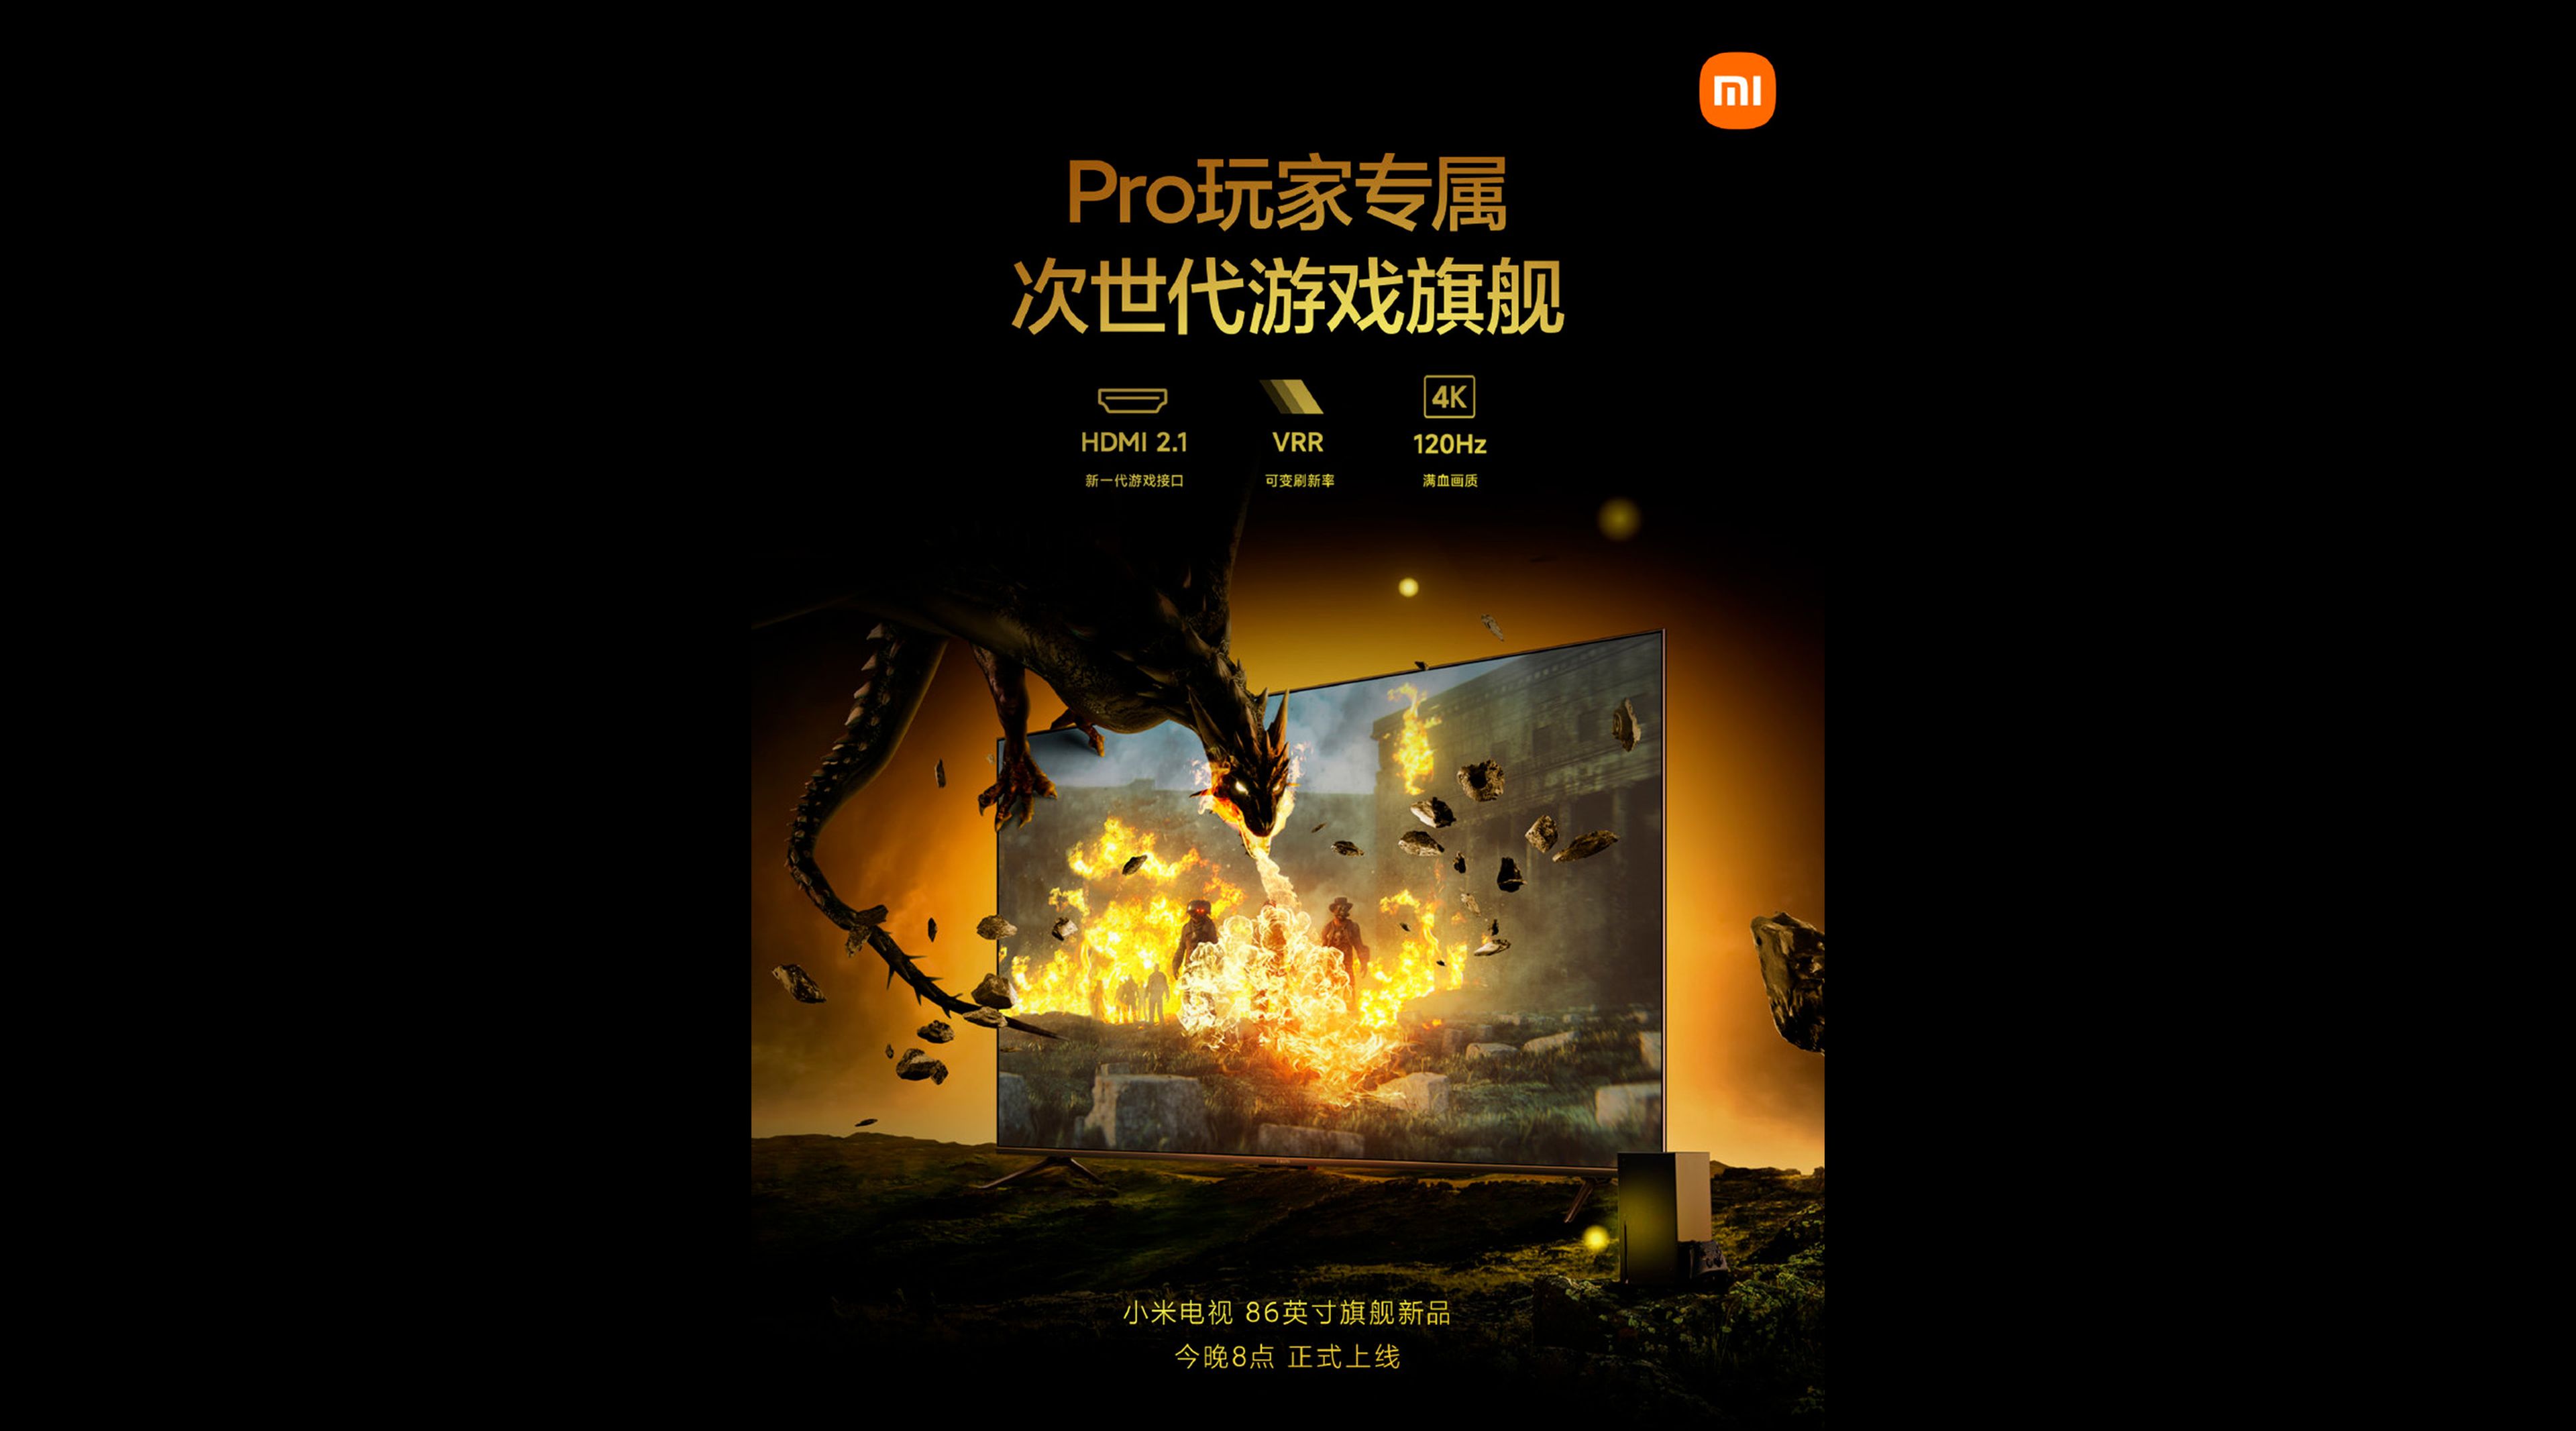 Xiaomi presenta una enorme Smart TV de 86 pulgadas y 120Hz